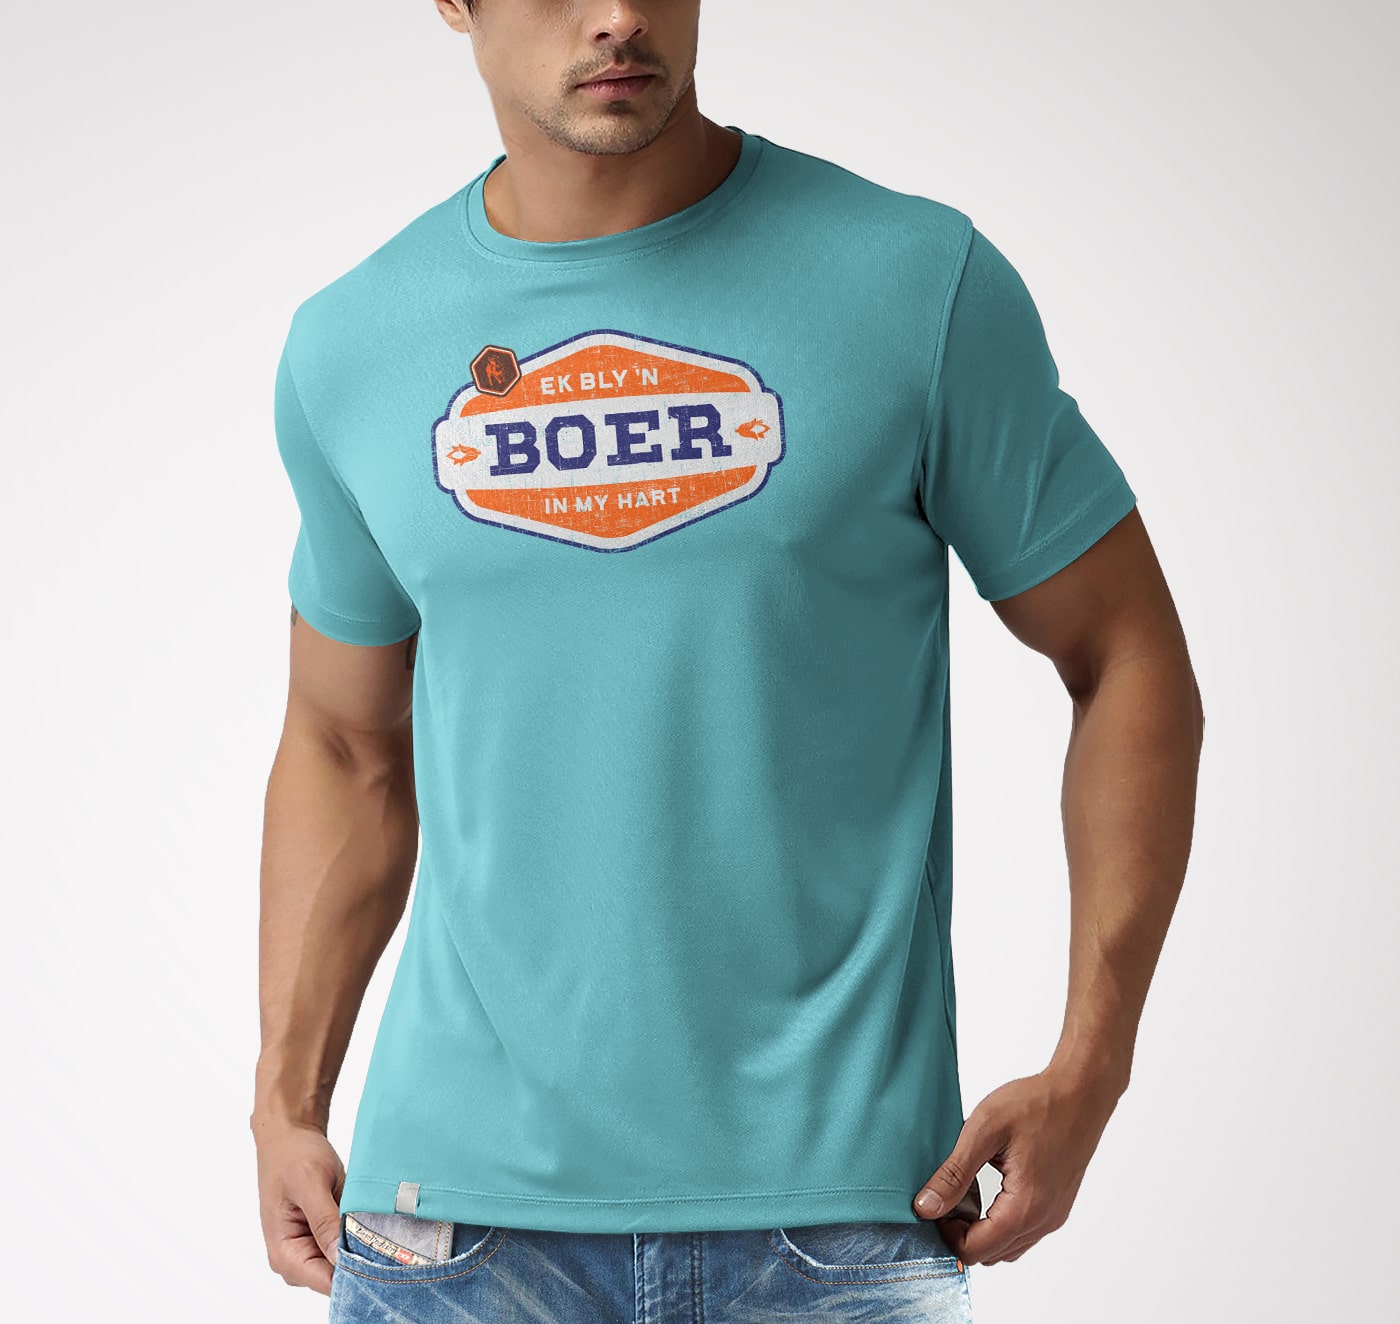 Boerboel T-Shirt - Ek bly n Boer